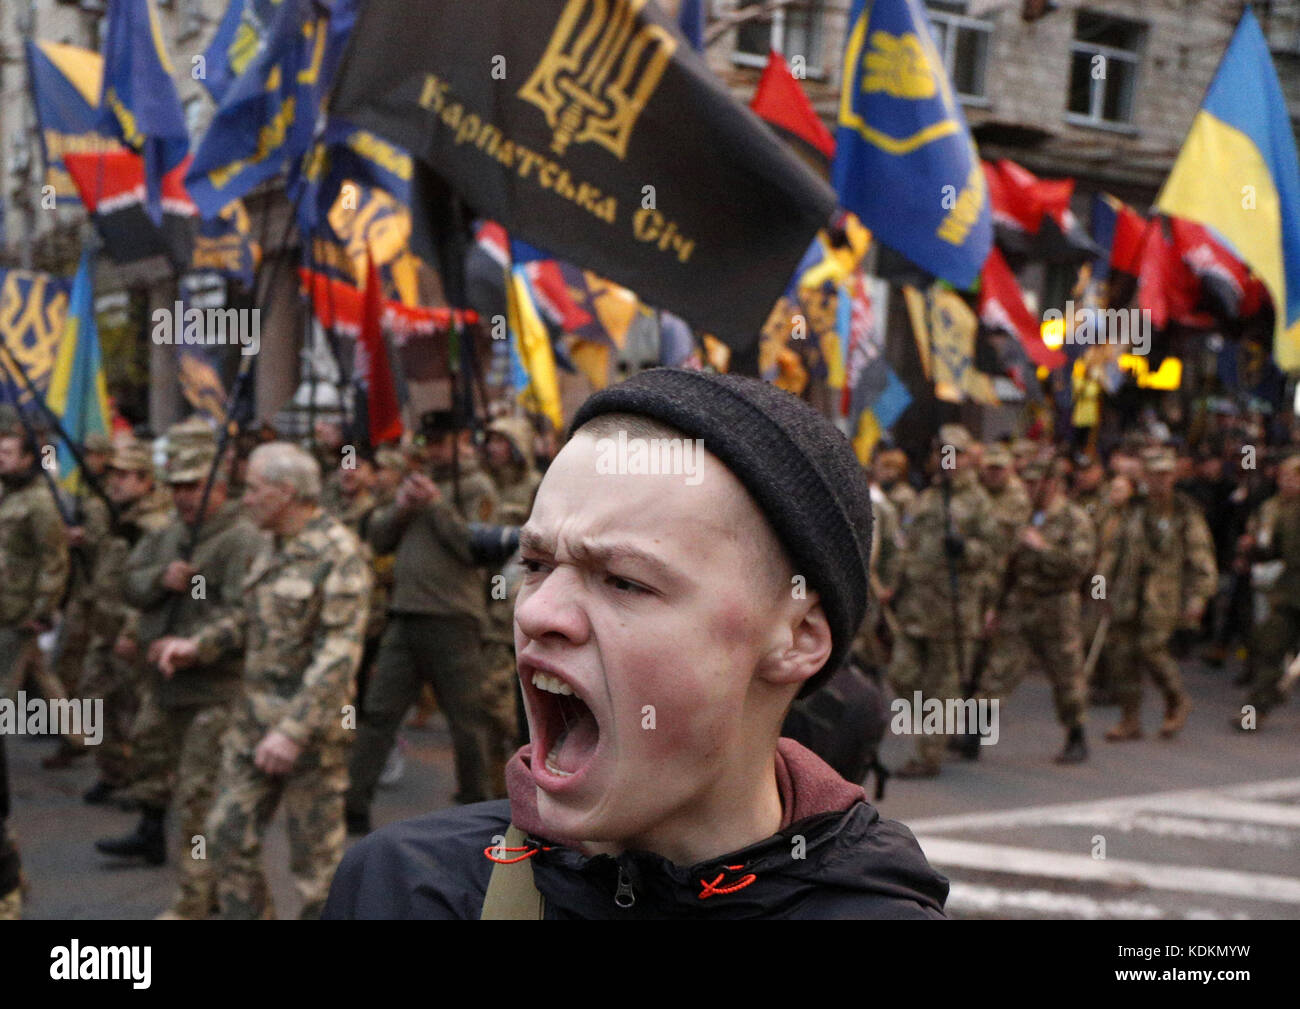 Украинцы воюют против украинцев. Украинские националисты. Украинские нацисты. Хохлы националисты. Лицо украинца.